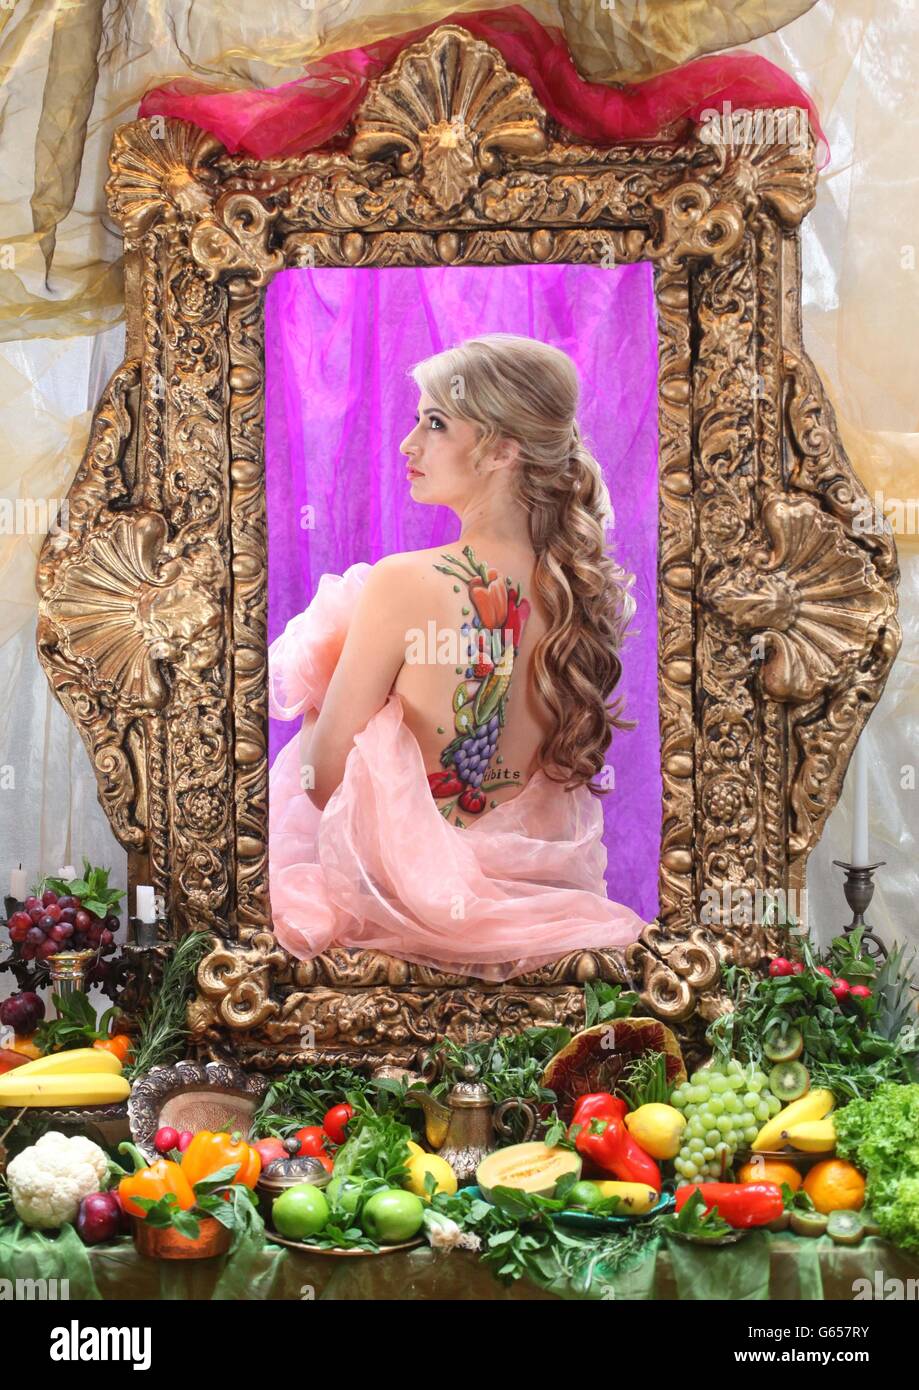 Chantelle Houghton devient une beauté renaissance pour la journée dans un tableau de Greg Stone pour célébrer la semaine végétarienne nationale, au restaurant végétarien Tibits sur Heddon Street dans le centre de Londres. Banque D'Images